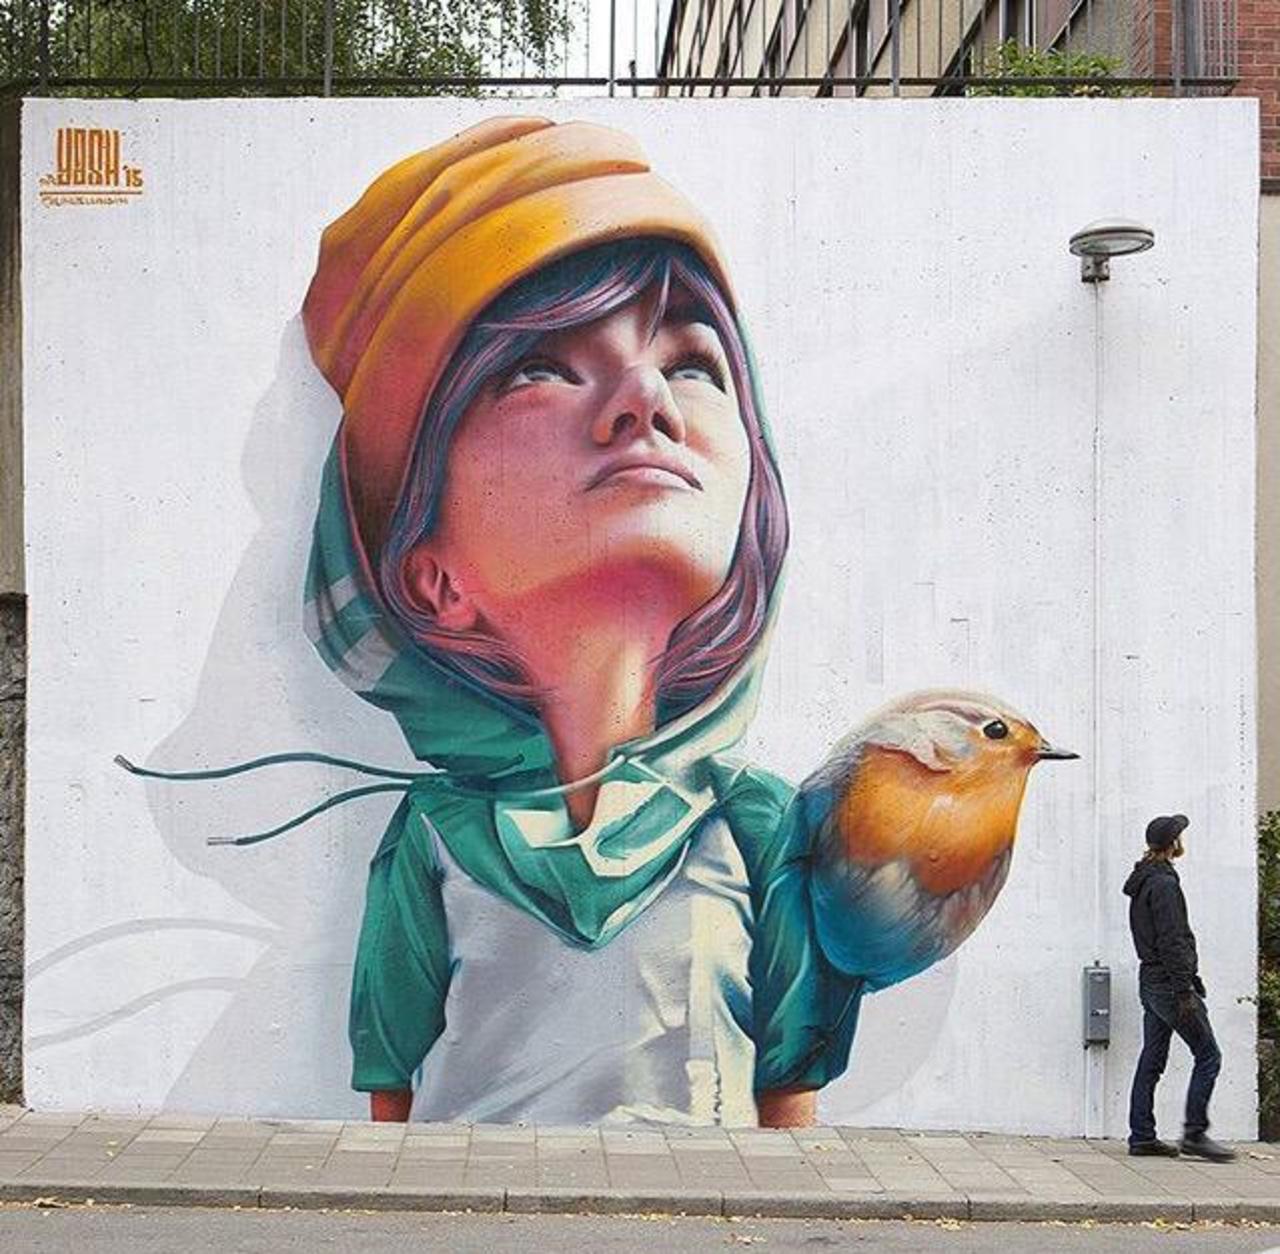 New Street Art by Yash 

#art #graffiti #mural #streetart http://t.co/qVZUdf9C3a